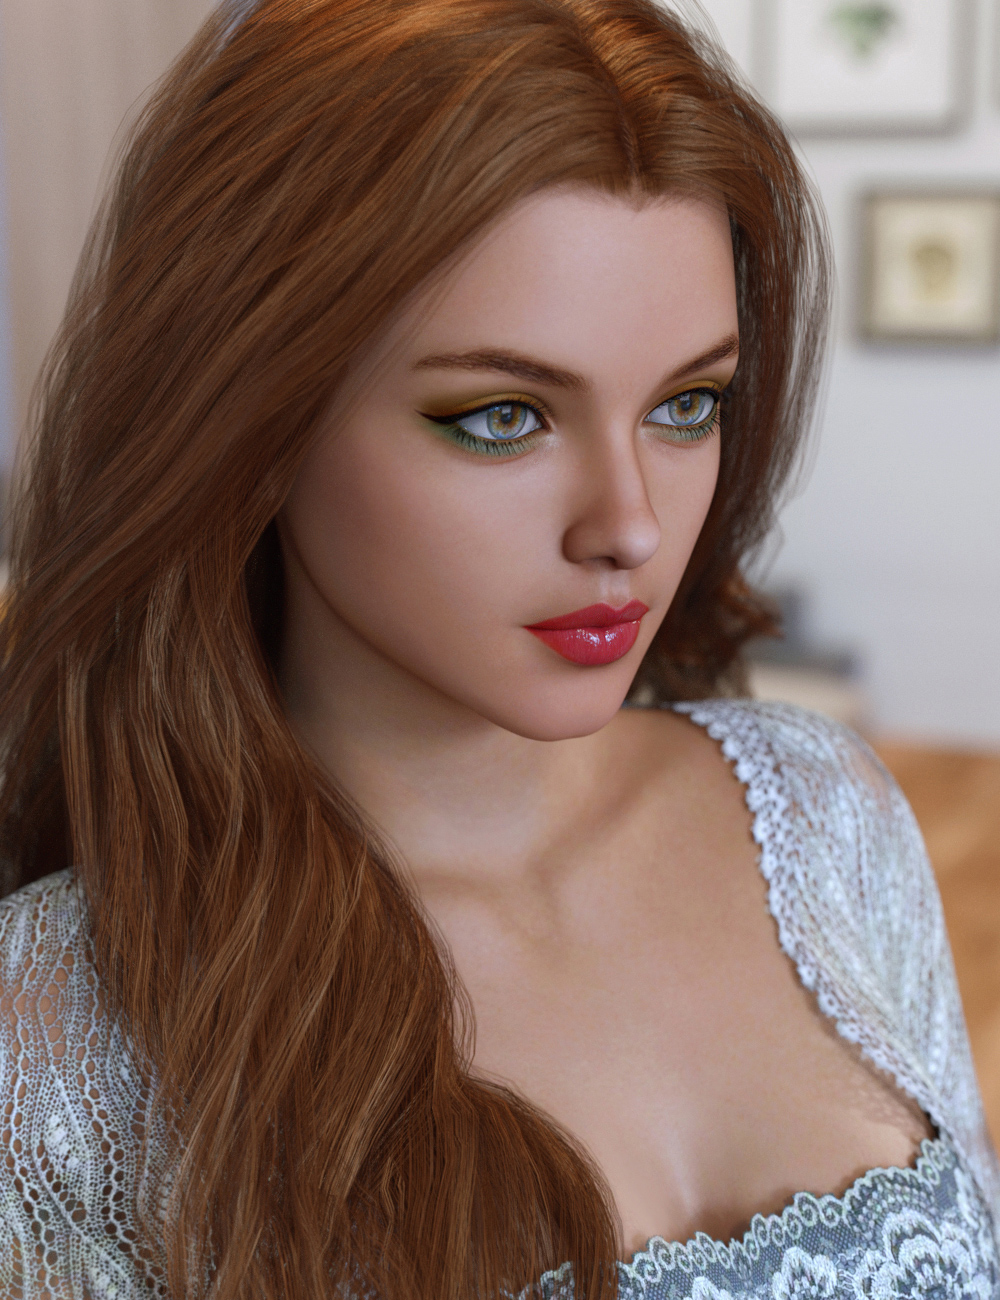 Grace for Genesis 8 Female by: addy, 3D Models by Daz 3D